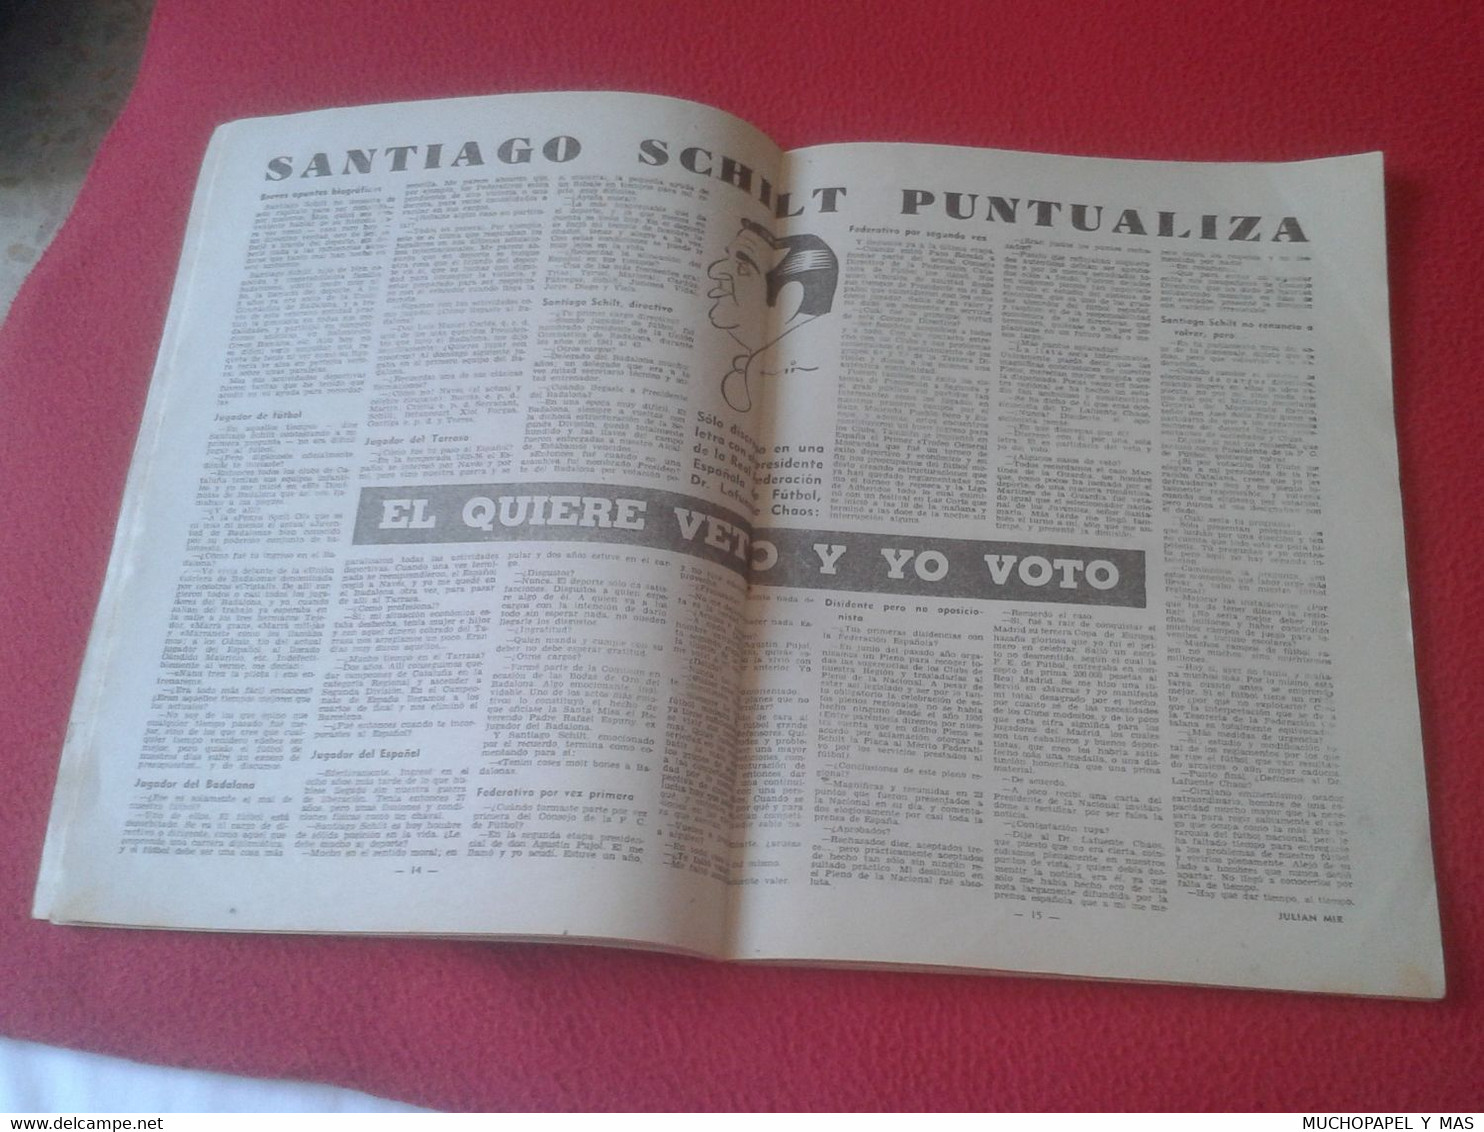 ANTIGUA REVISTA DE DEPORTES DICEN Nº 330 7 DE MARZO 1959 FÚTBOL Y OTROS, ESPAÑOL DE BARCELONA..ETC OLD MAGAZINE..SPORTS